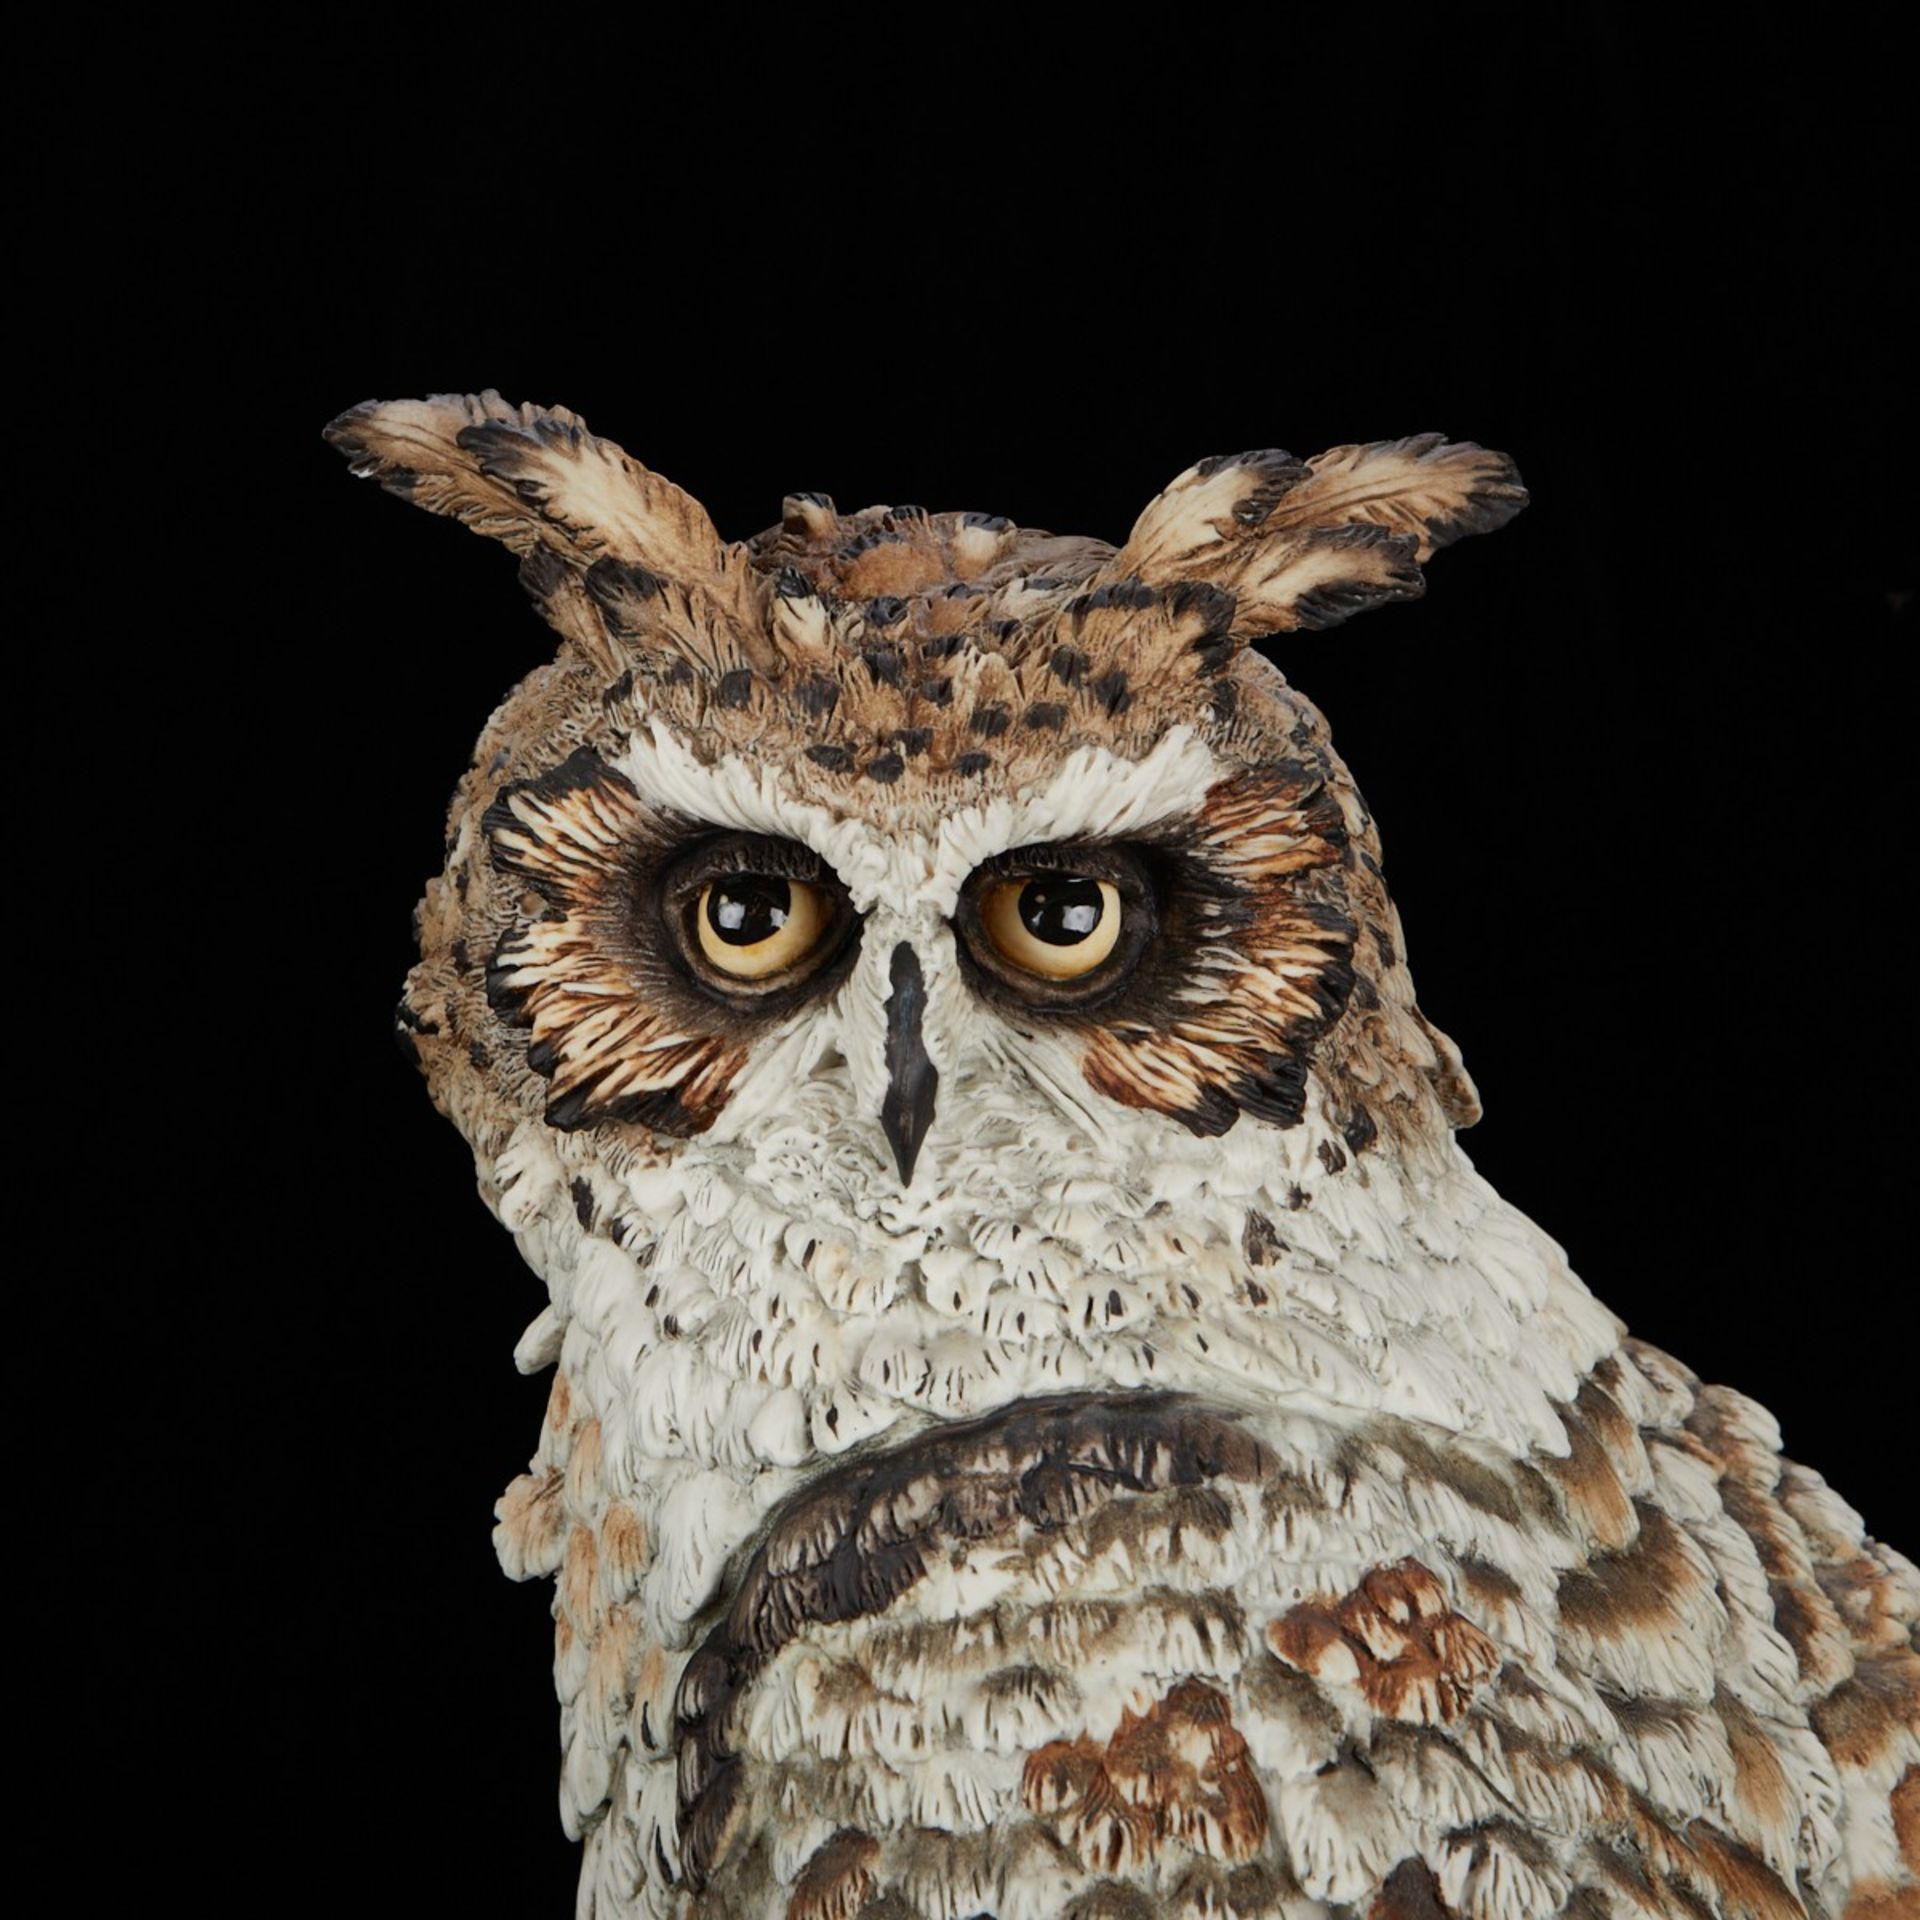 Giuseppe Armani "Wisdom" Owl Figure - Bild 9 aus 12